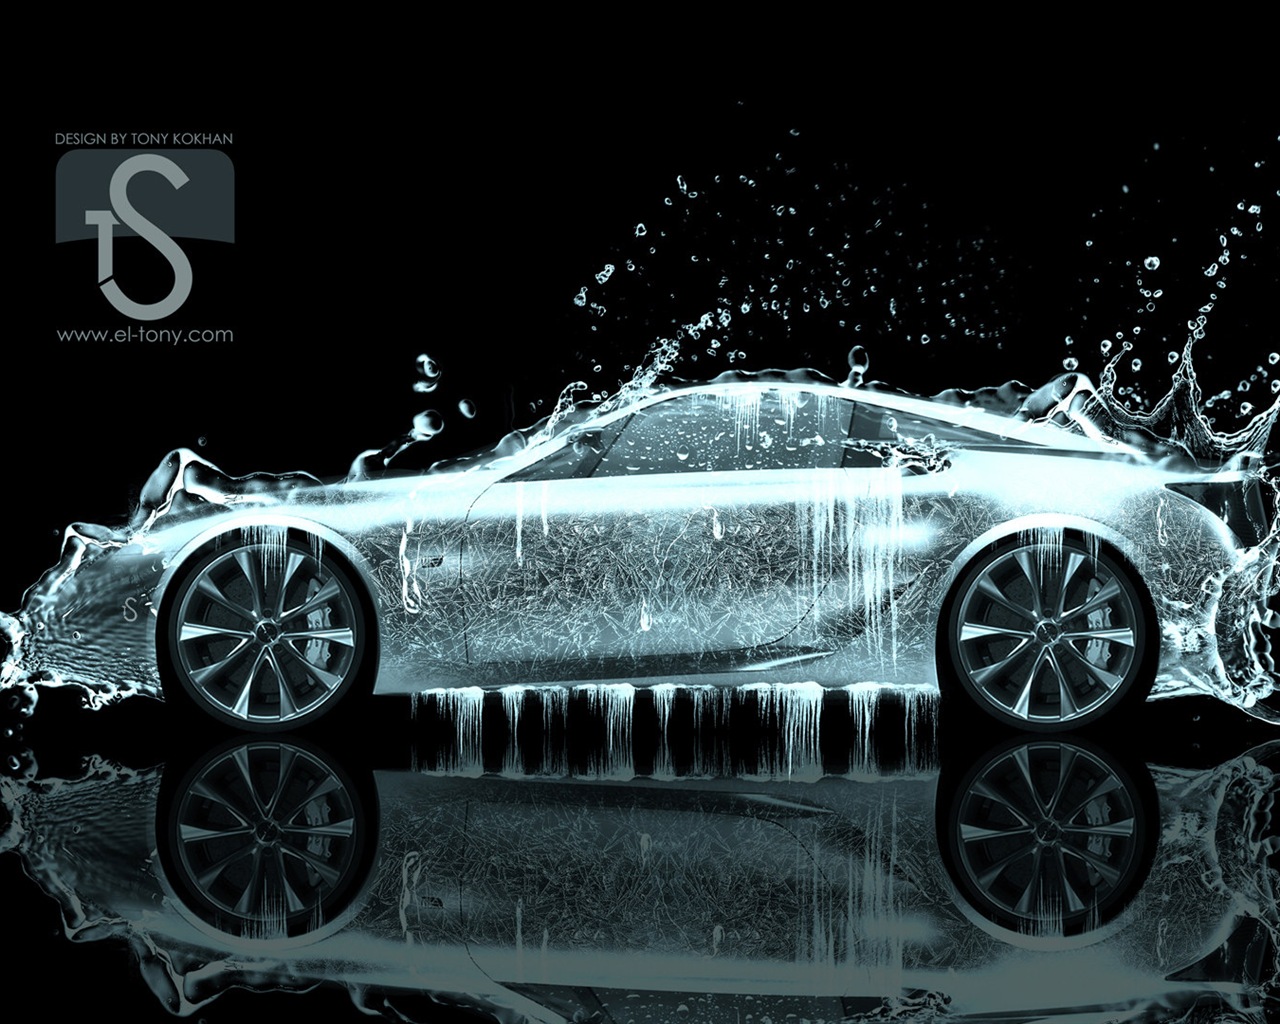 Les gouttes d'eau splash, beau fond d'écran de conception créative de voiture #26 - 1280x1024